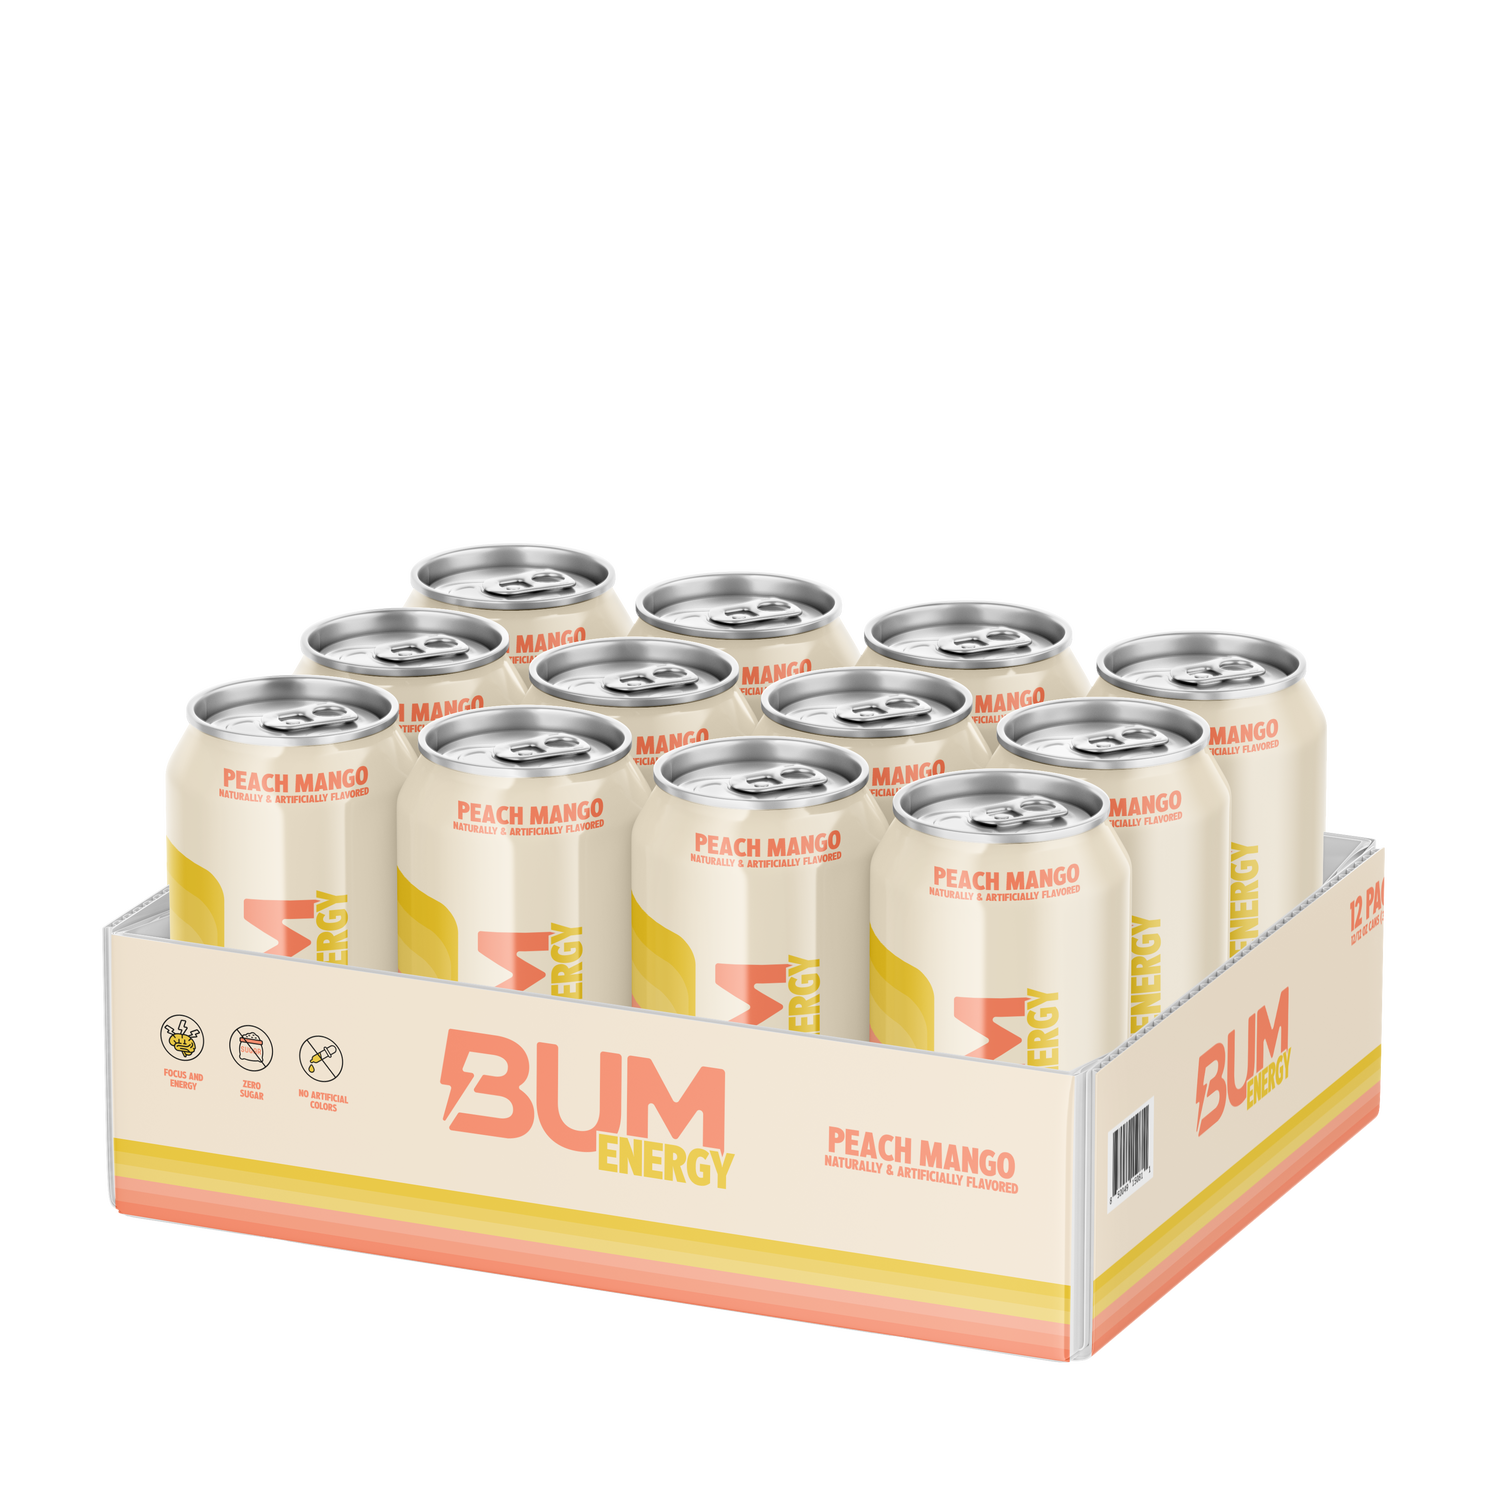 Bum Energy Energy Drink - Peach Mango - 12Oz. (12 Cans) - Zero Sugar